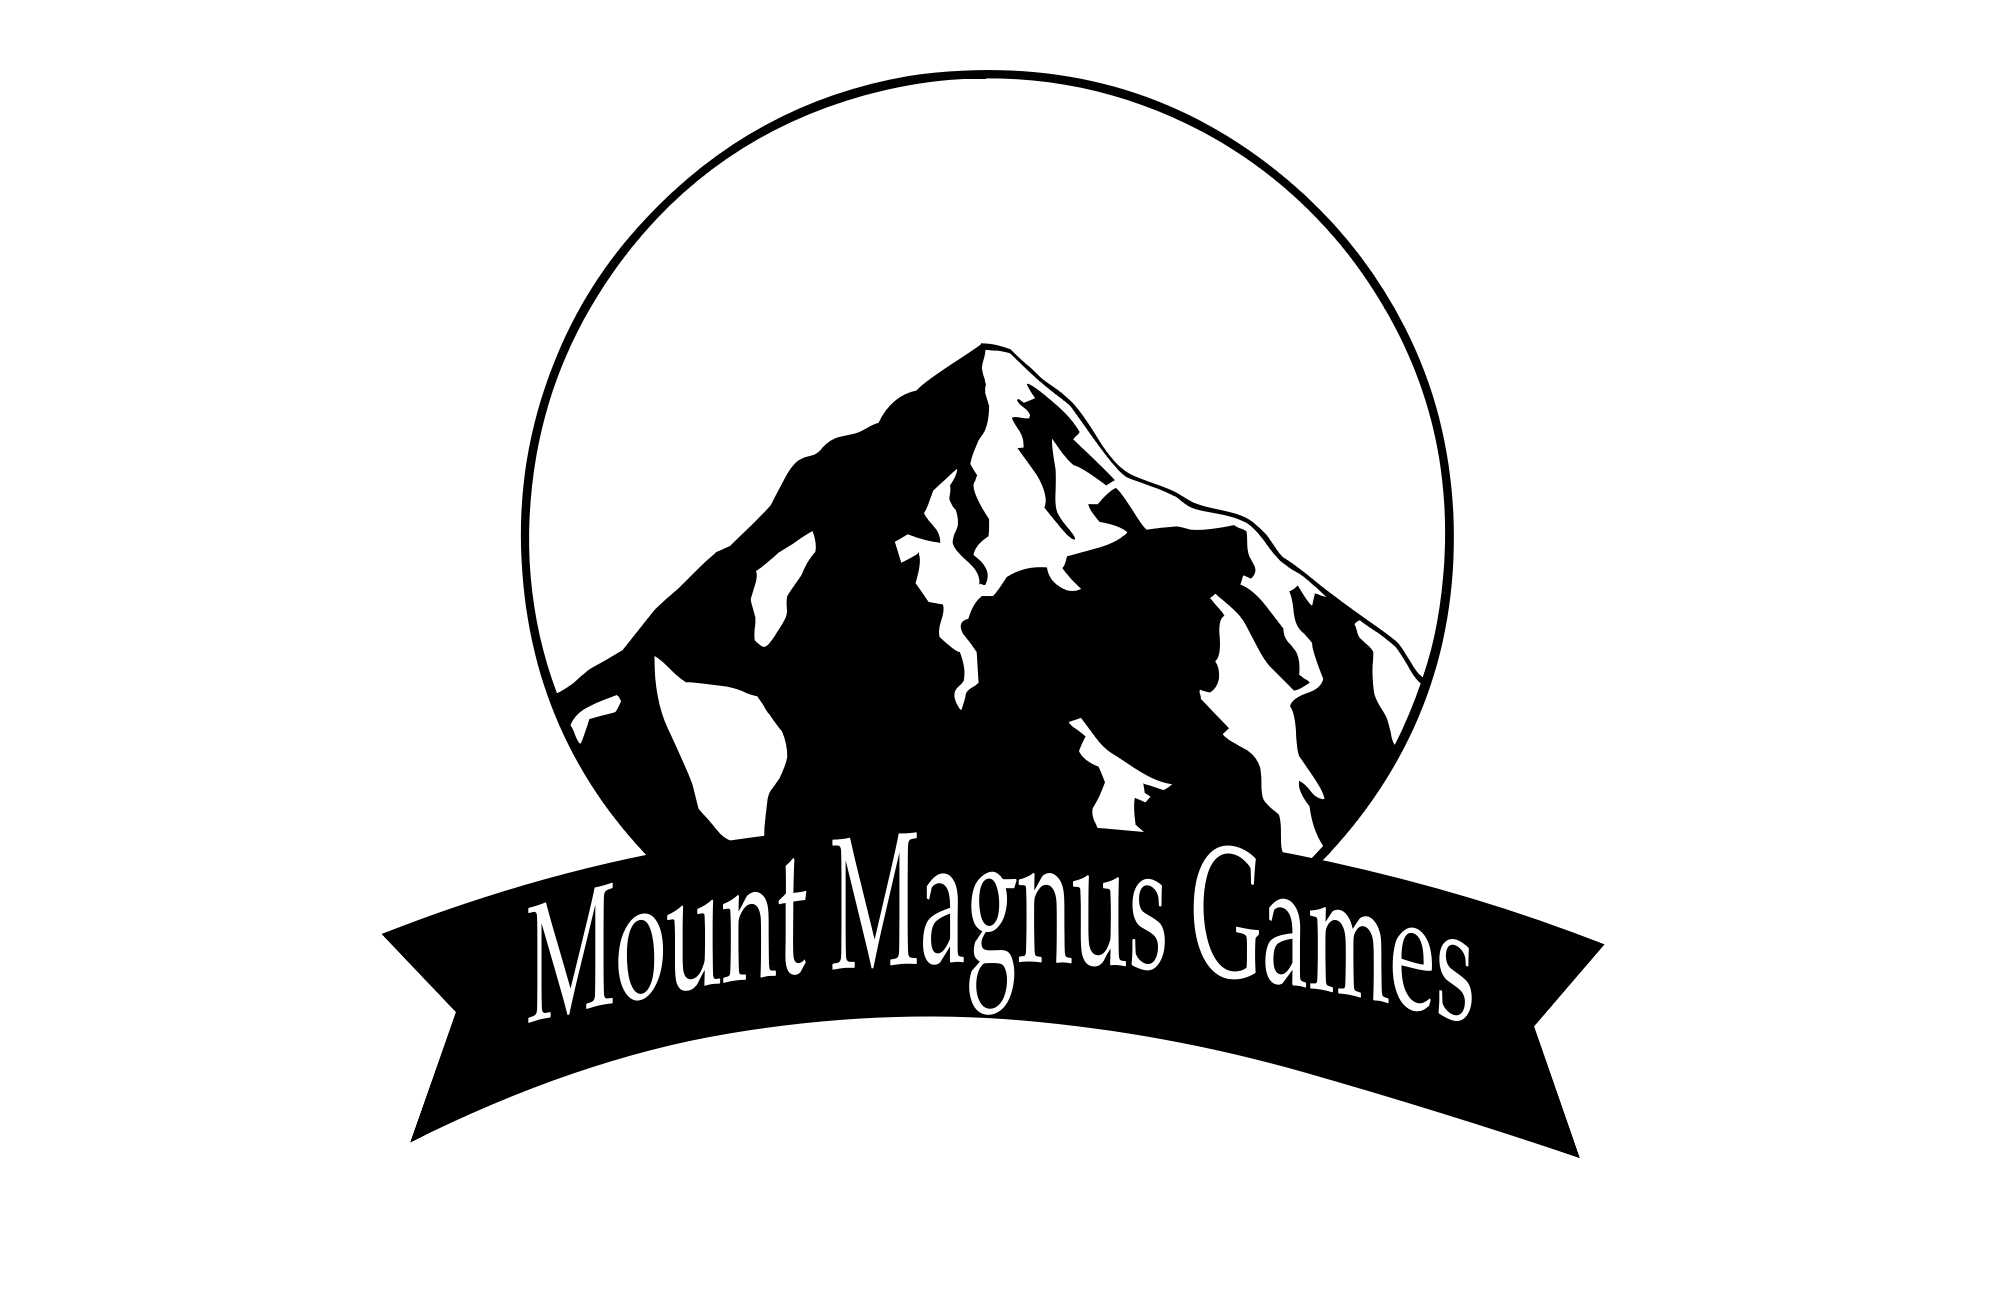 Sieg Heil by Mount Magnus Games